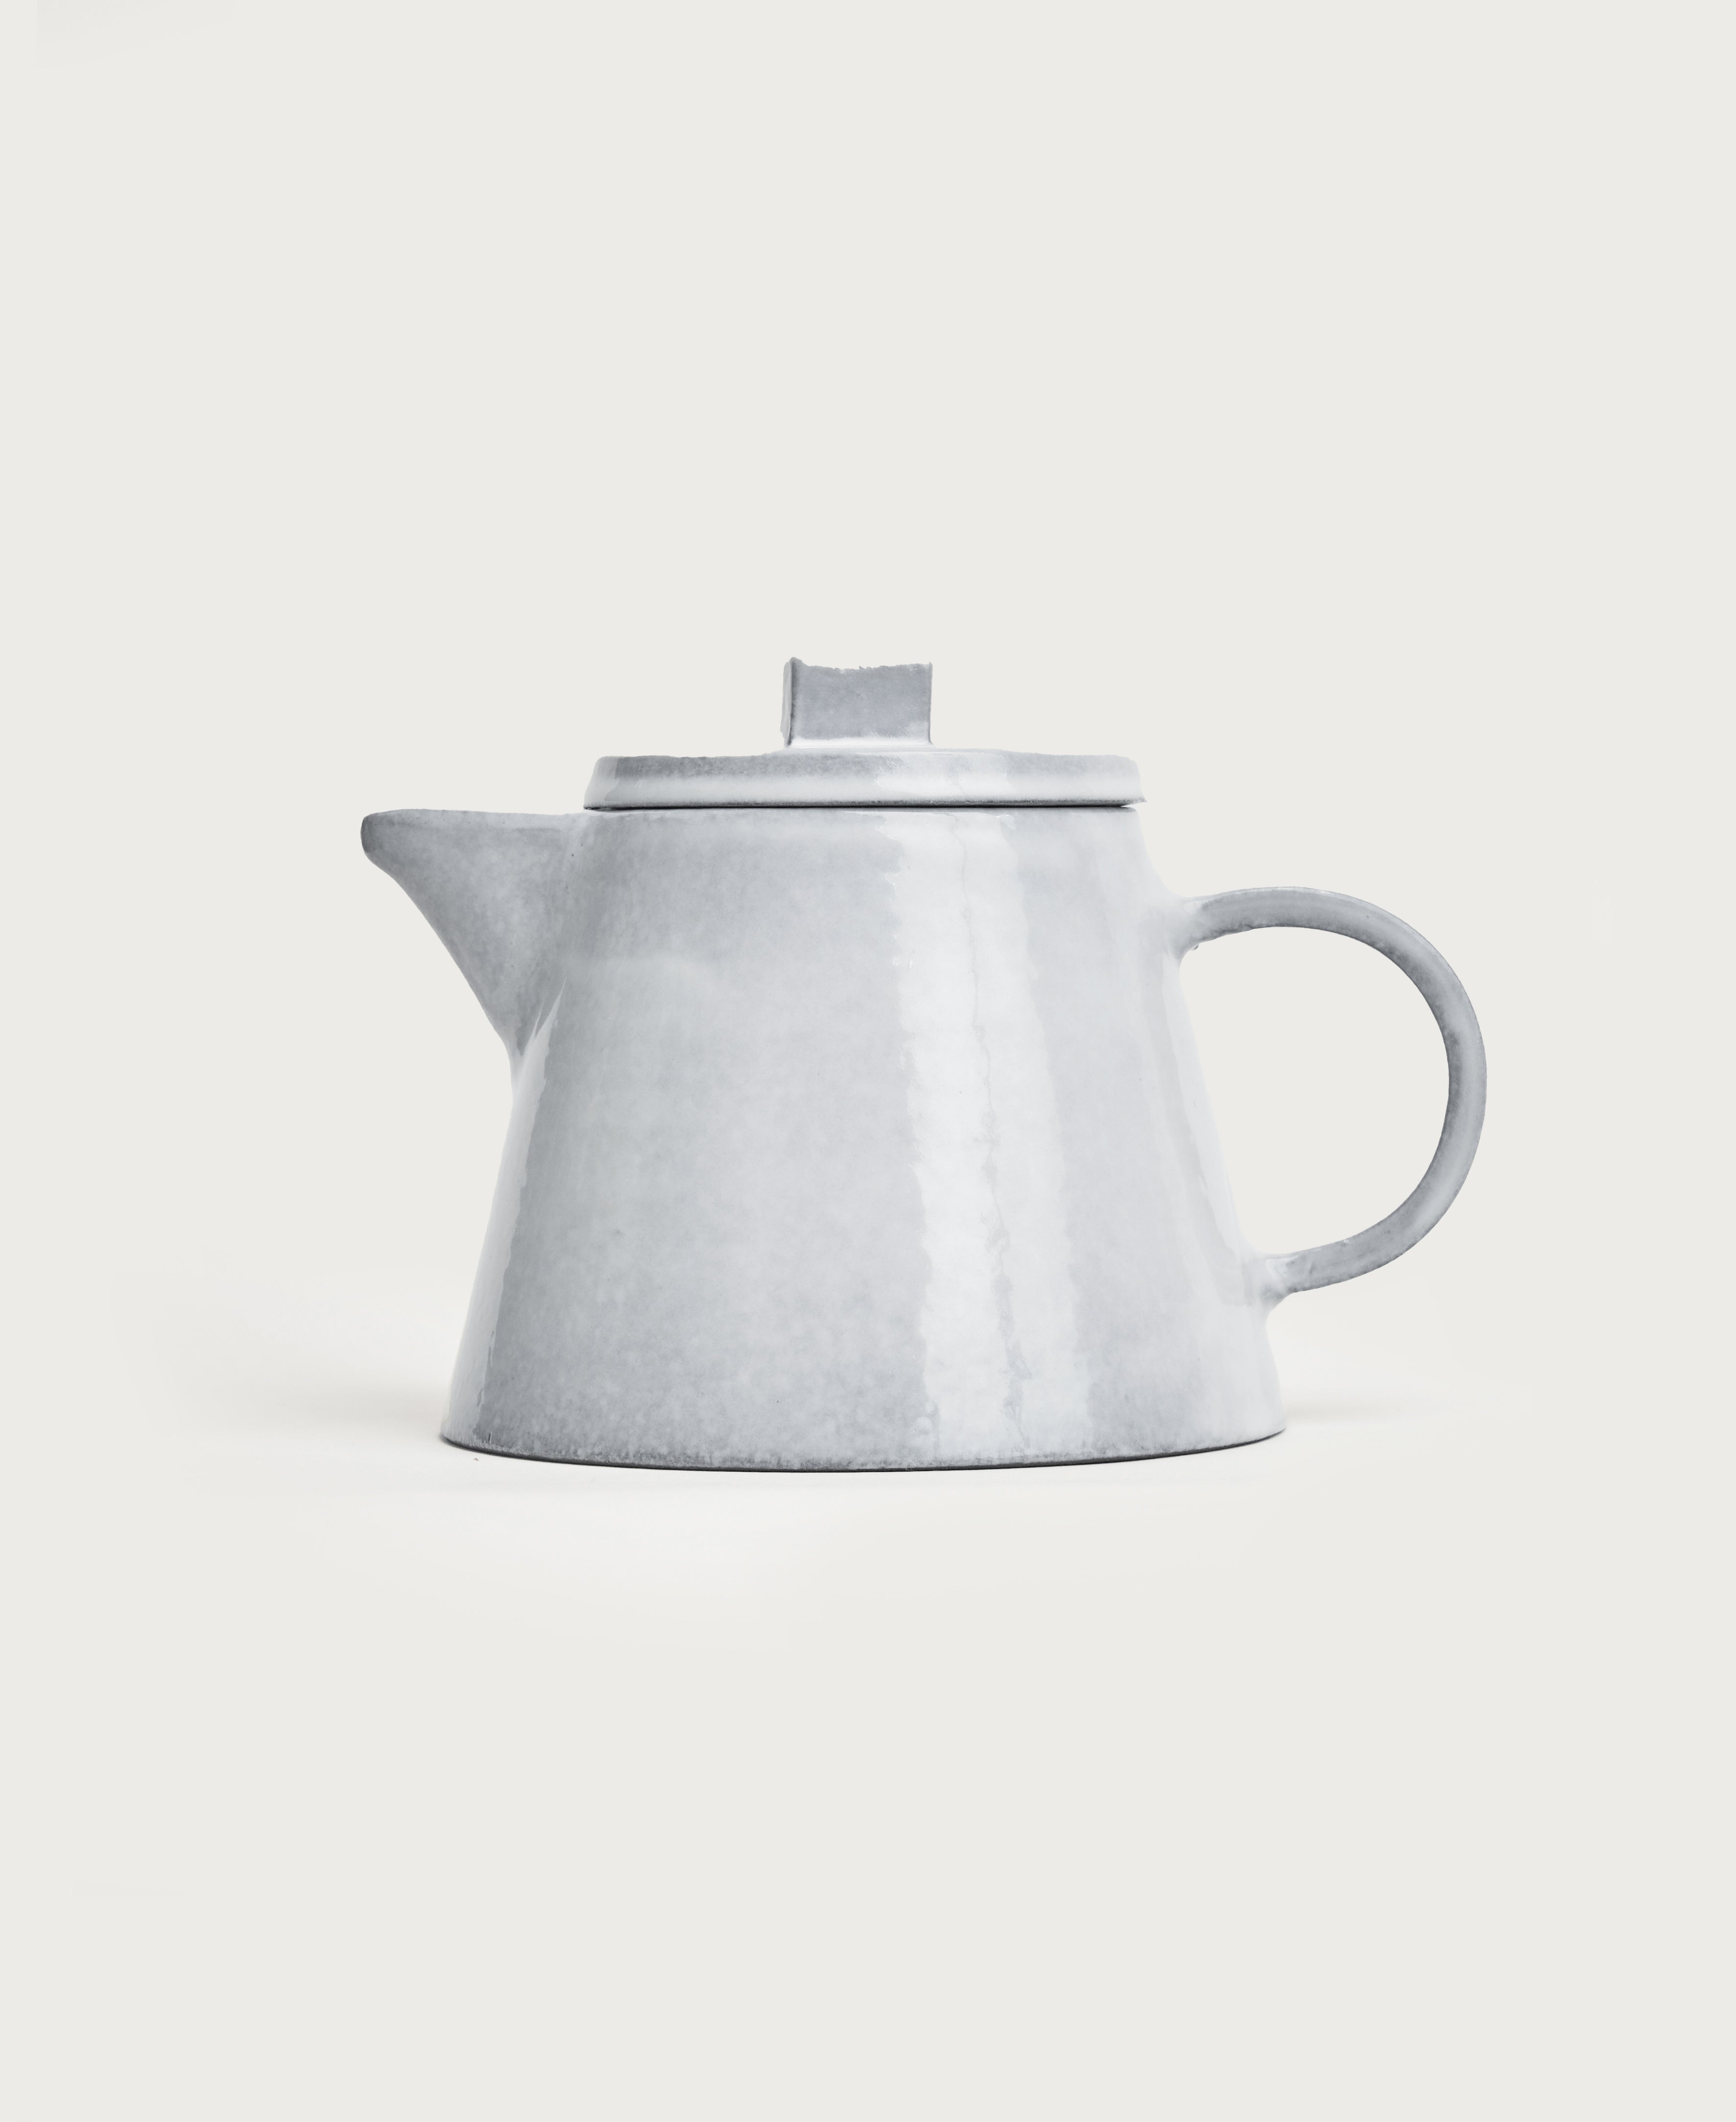   Tea Pot  